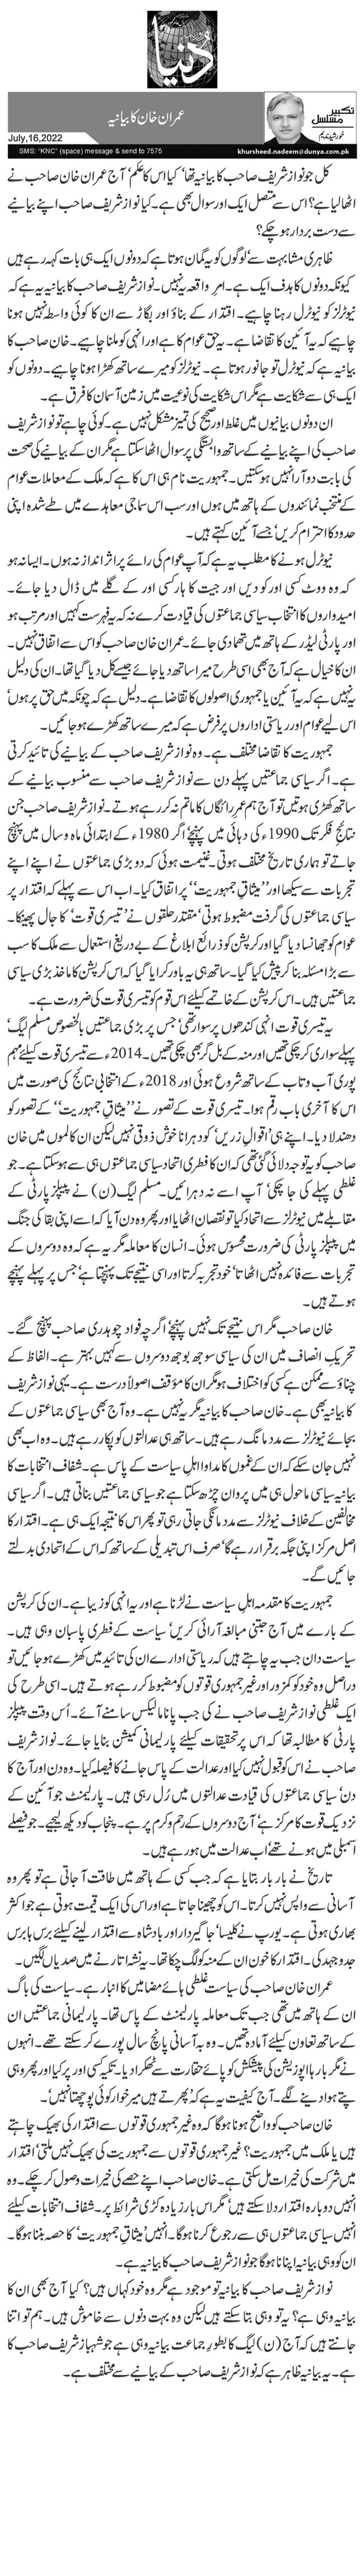 عمران خان کا بیانیہ